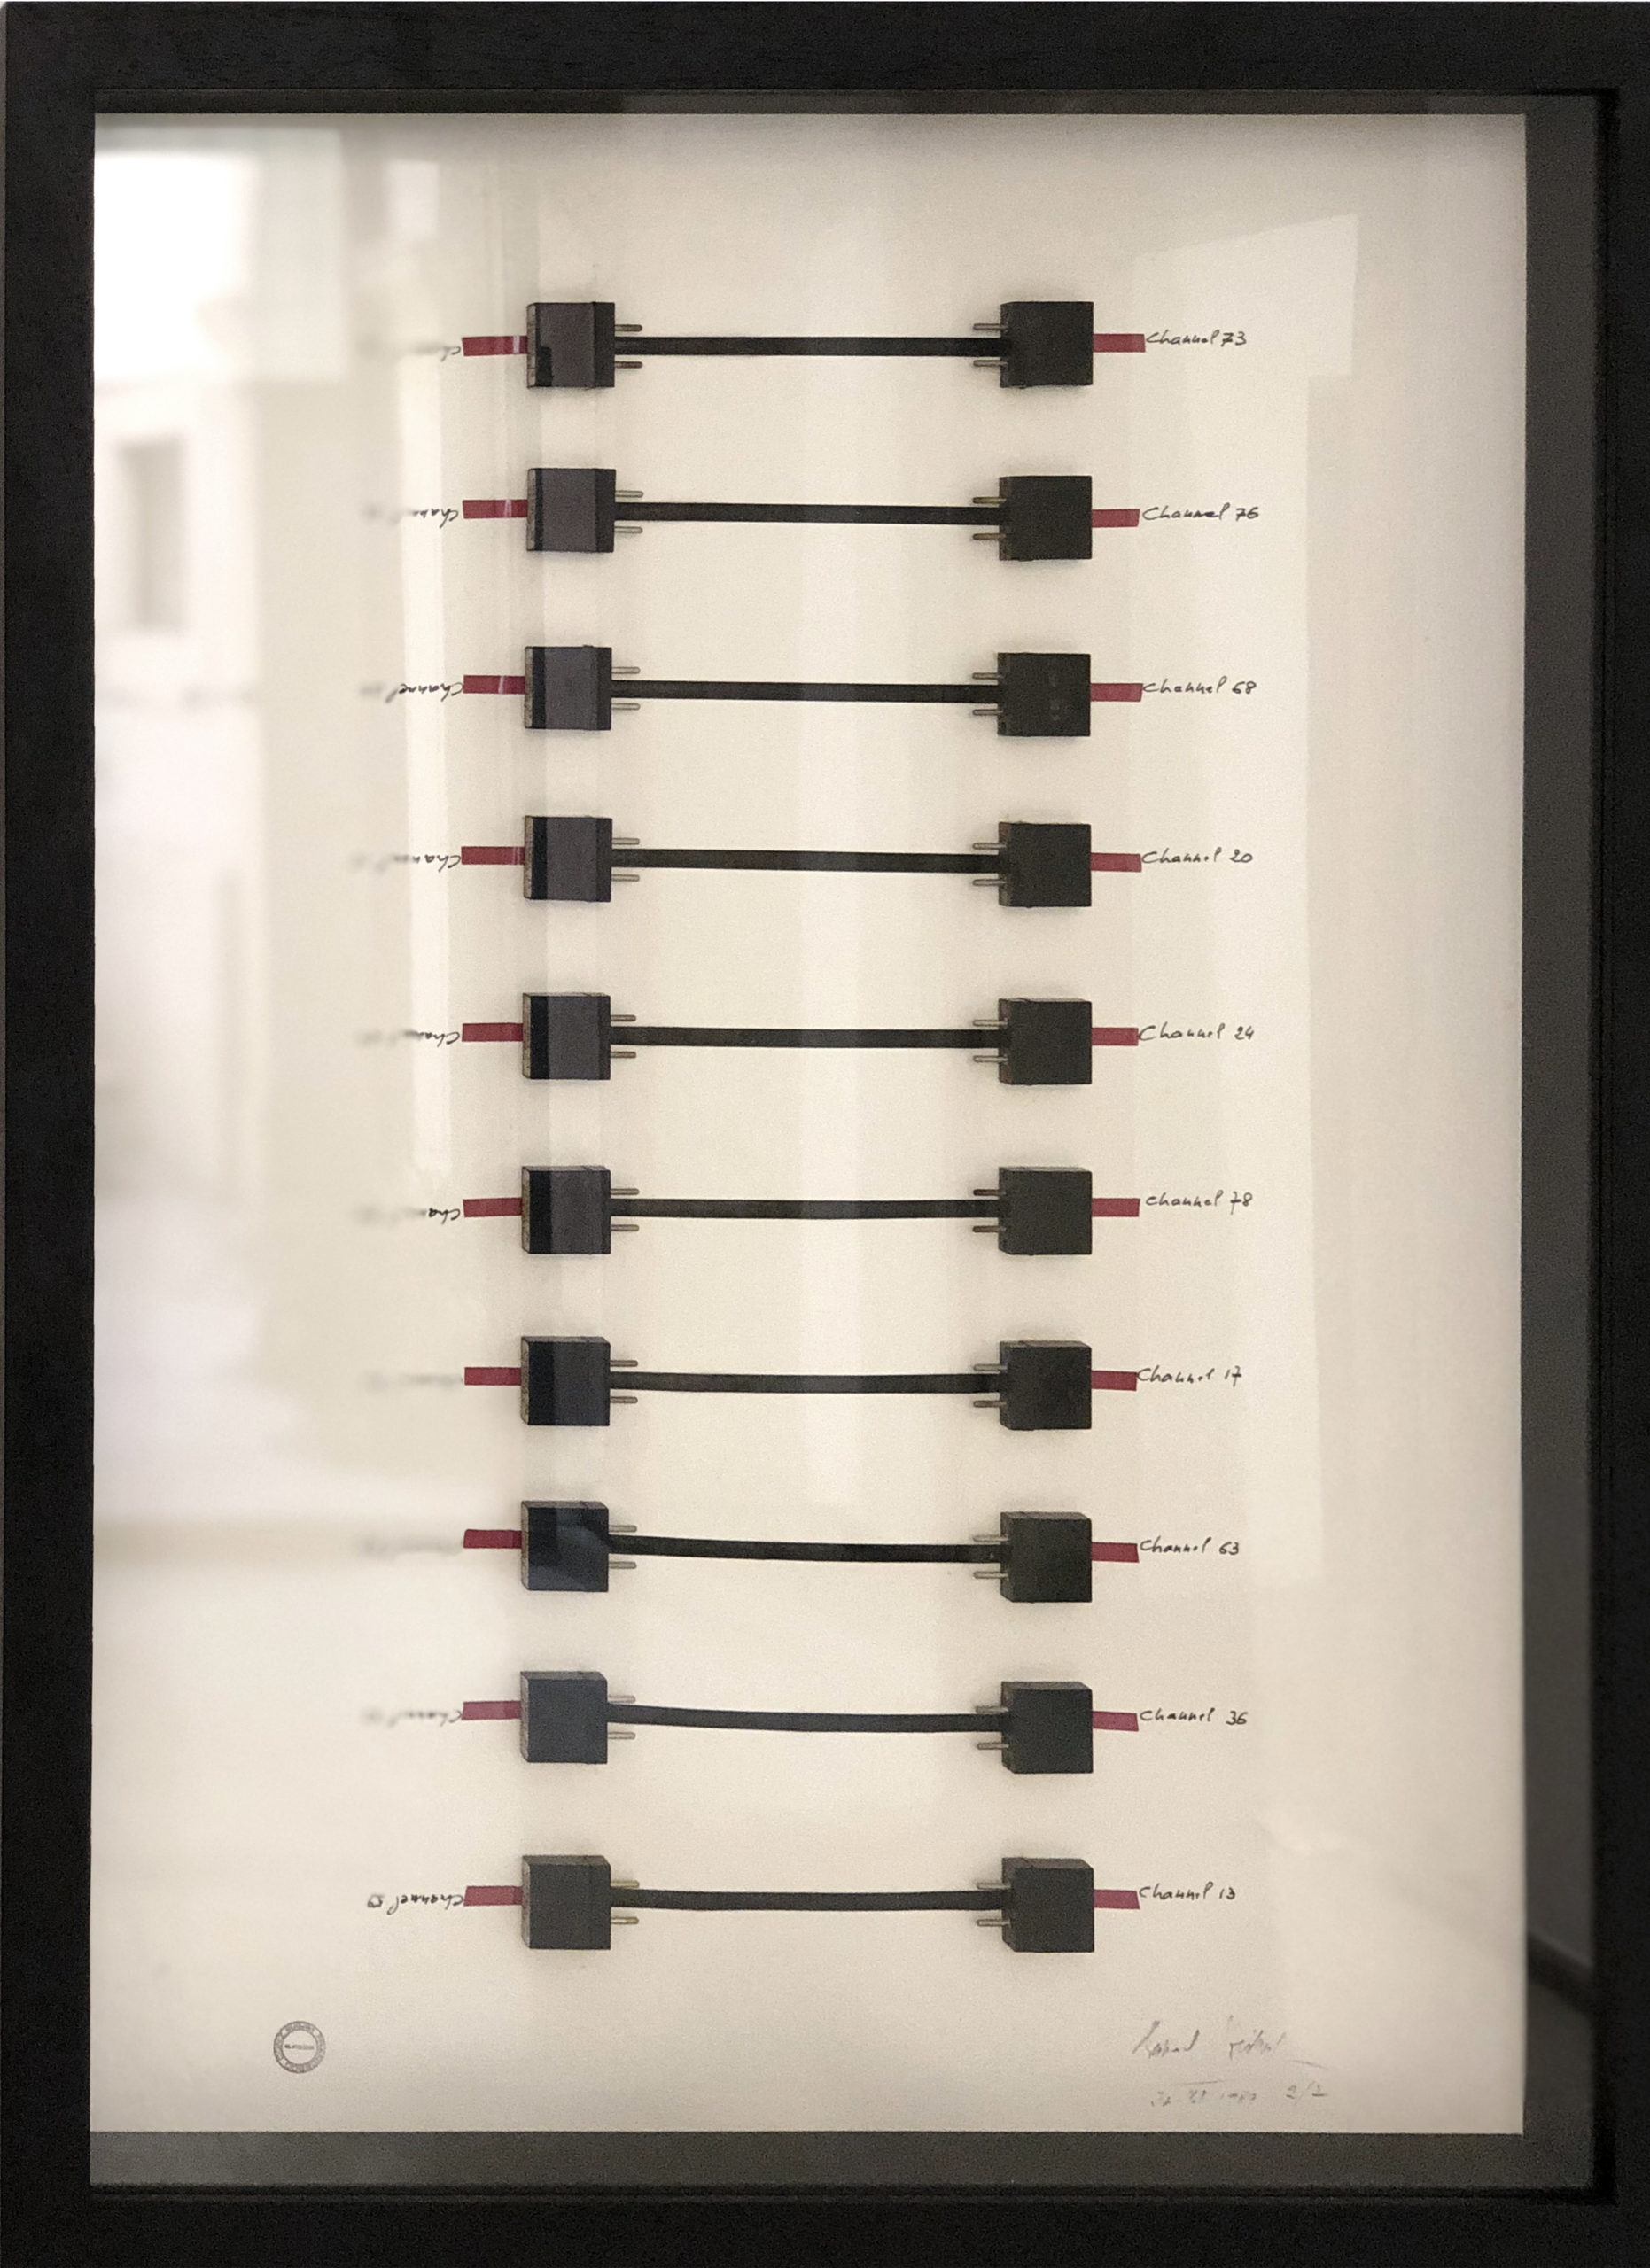 B. Heidsieck, Circuits integres 2, 1989, circuiti integrati e scritture serigrafate su carta, 70 x 50 cm